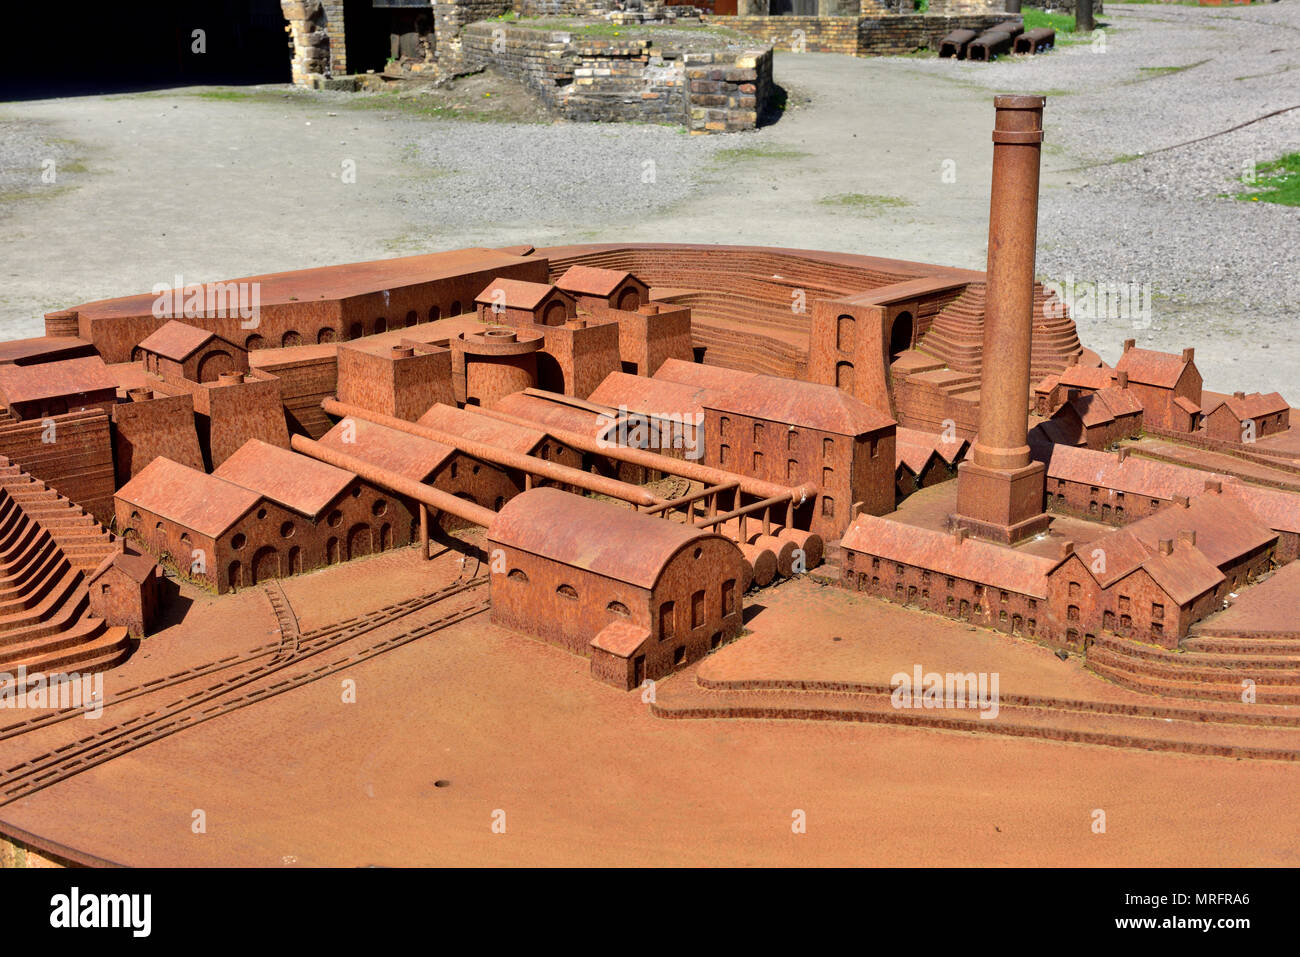 Blaenavon Ironworks Modèle d'un ancien site industriel maintenant National Museum, South Wales Valleys, UK Banque D'Images